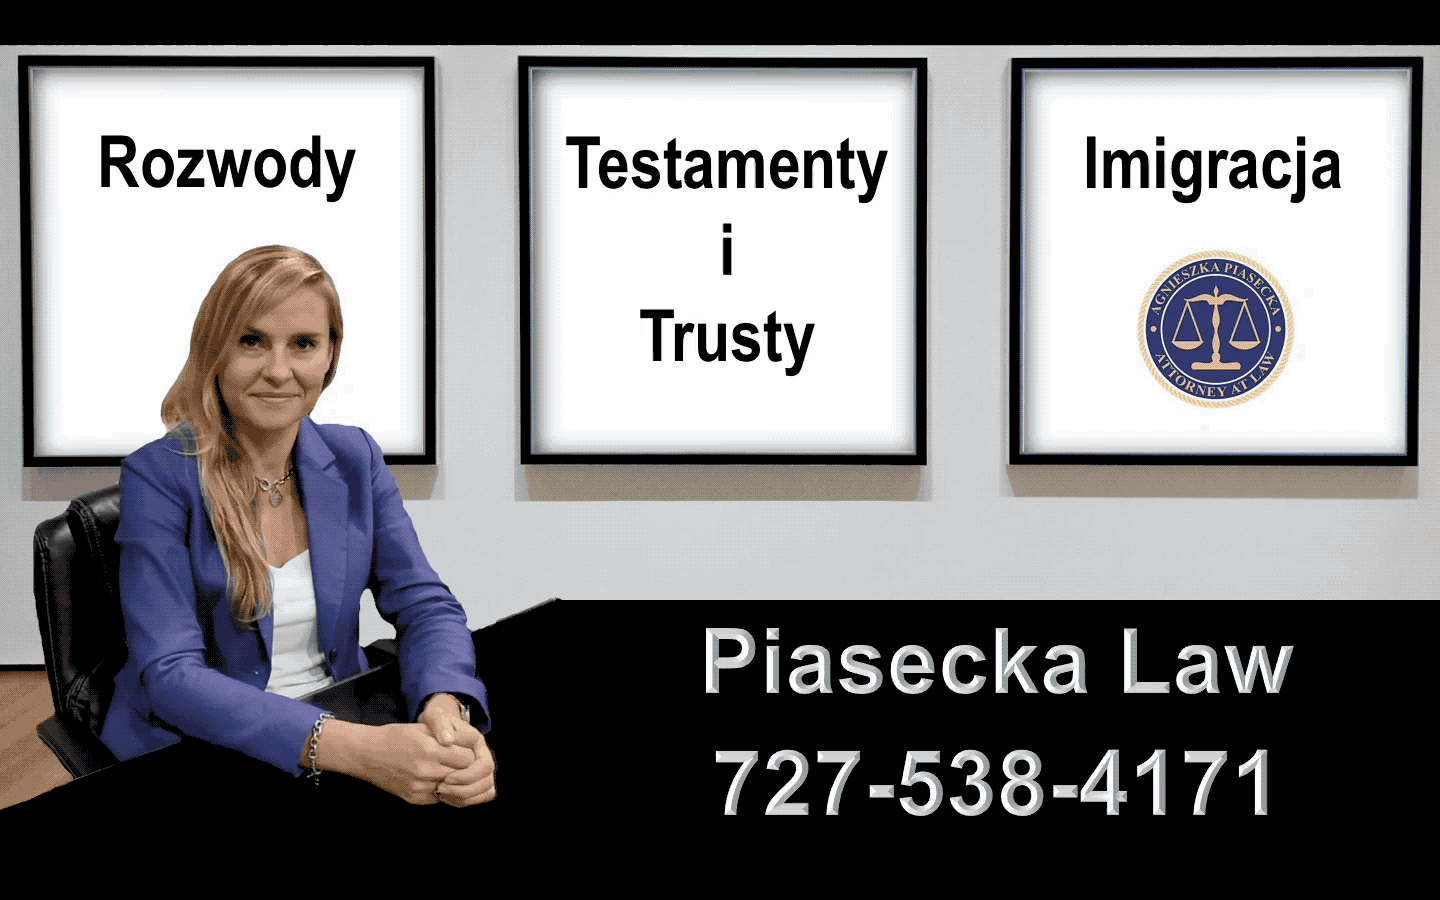 Rozwody, Testamenty i Trusty, Imigracja Prawnik Adwokat Agnieszka Aga Piasecka Law Tampa GIF.gif